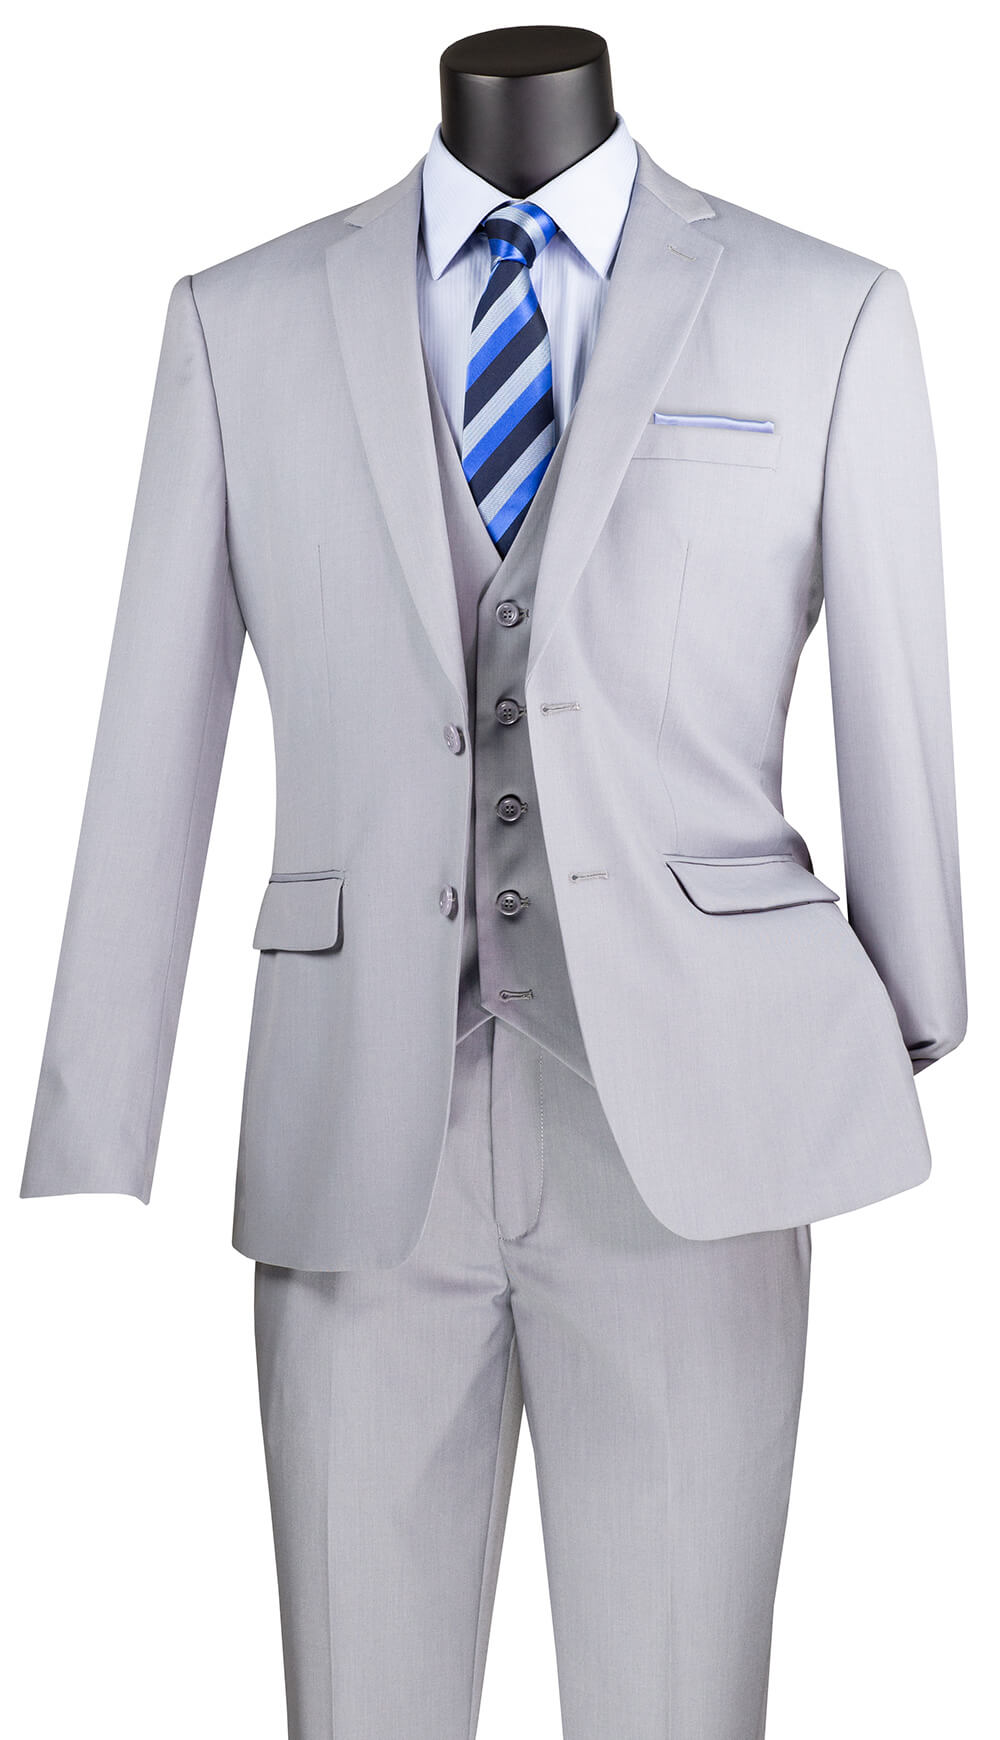 Vinci Suit SV2900-Lt. Grey - Church Suits For Less